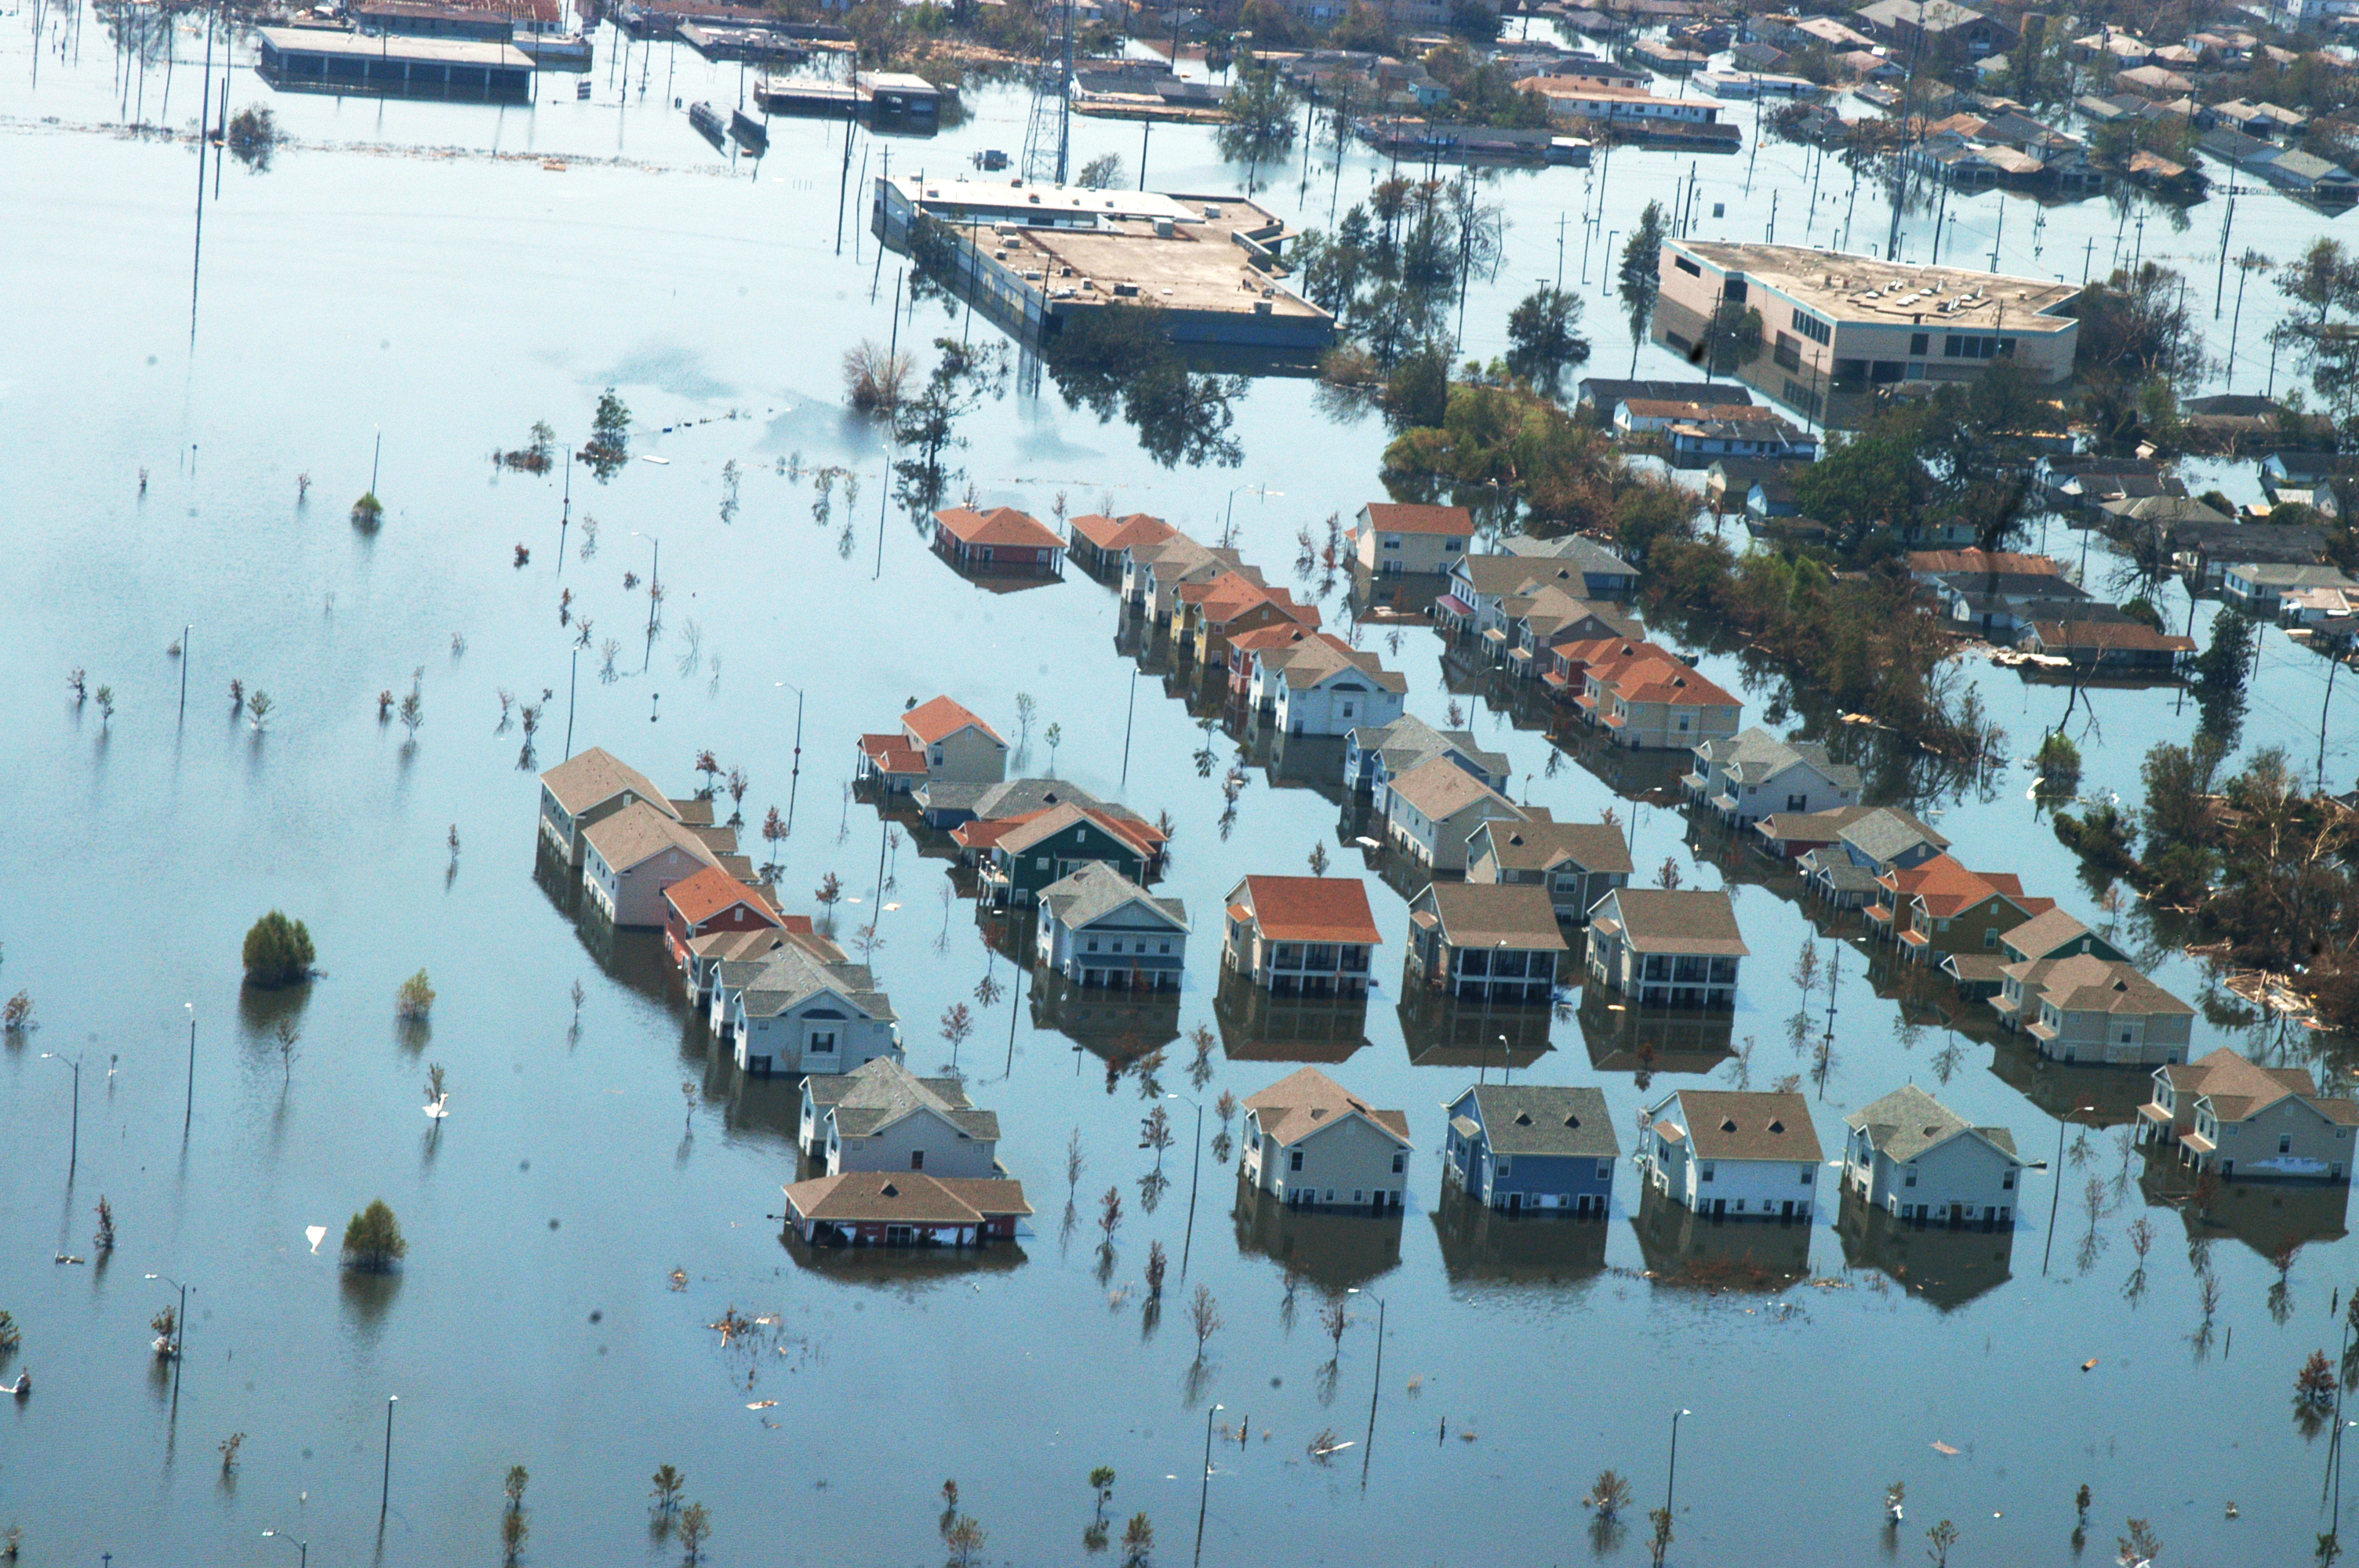 Aftermath of Hurricane Katrina in Louisiana